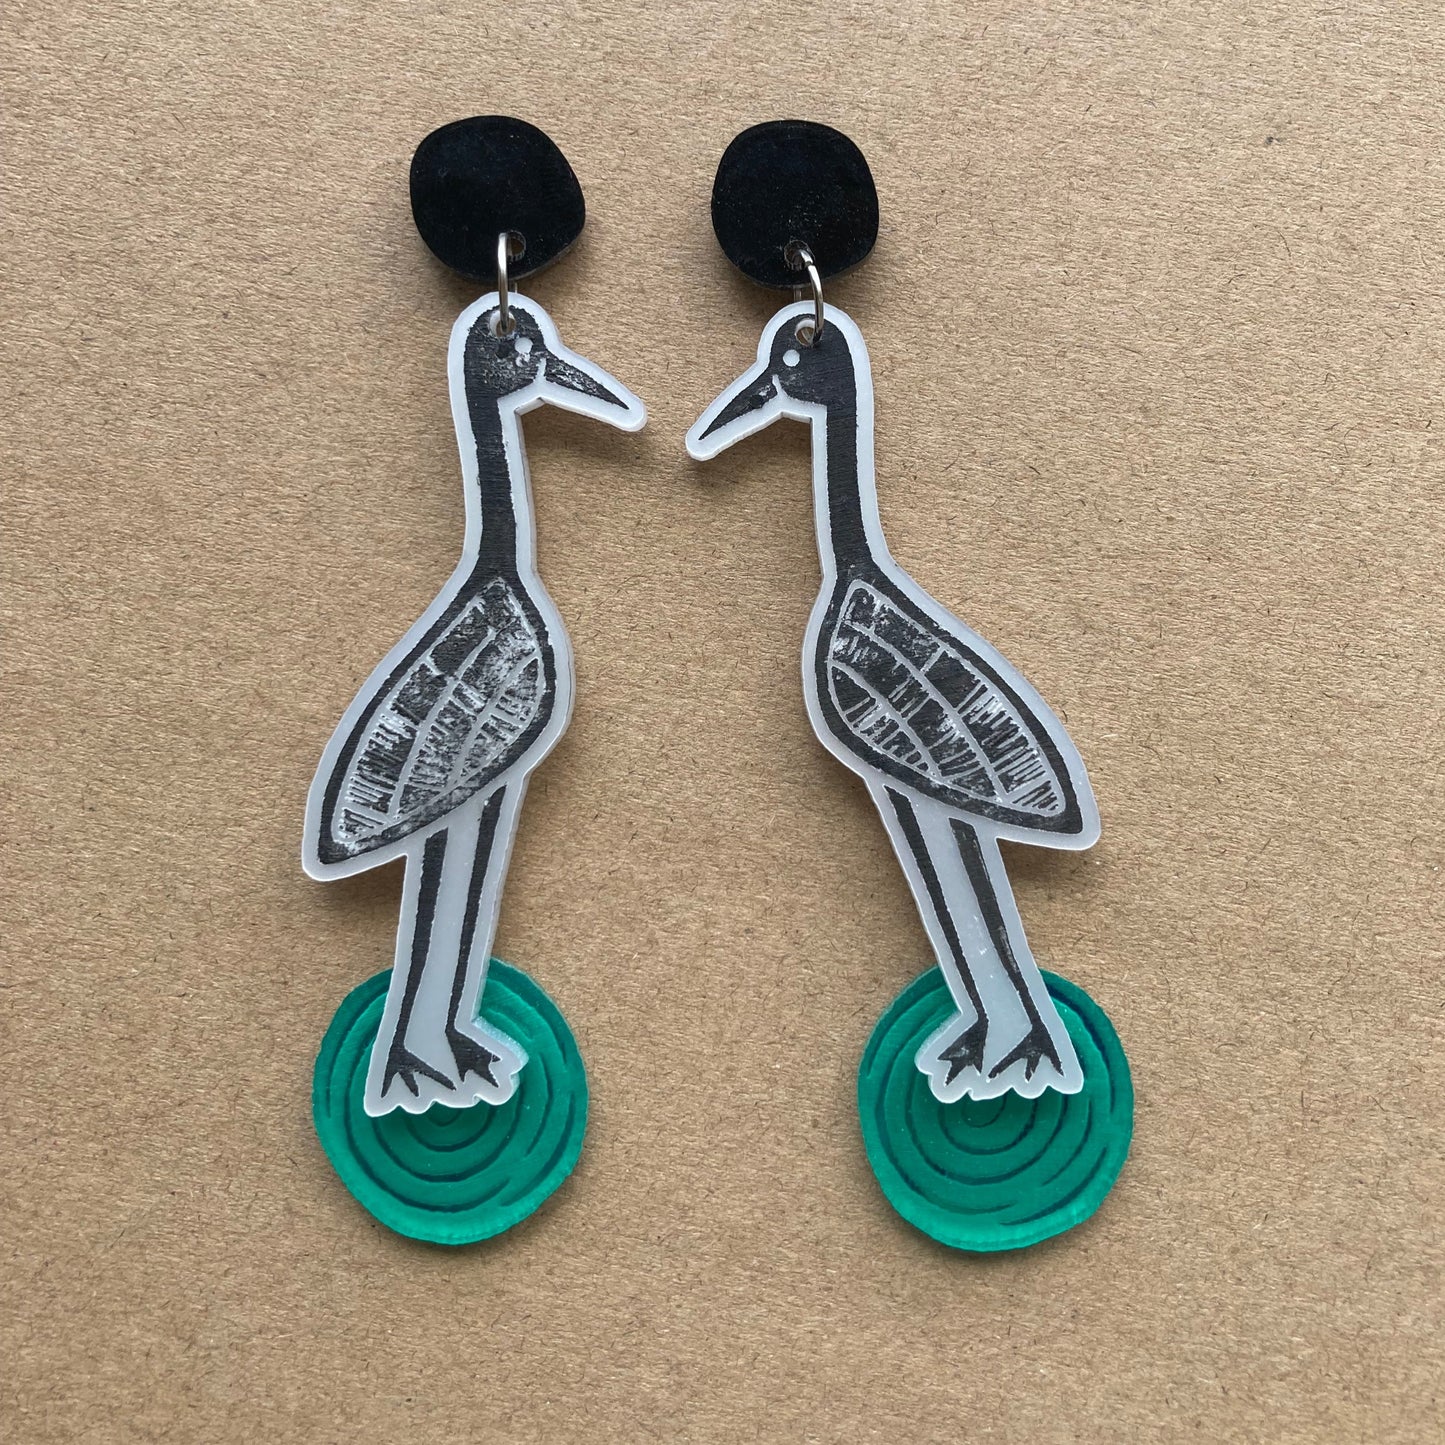 Goorrarndal (brolga) and jila (waterhole) earrings